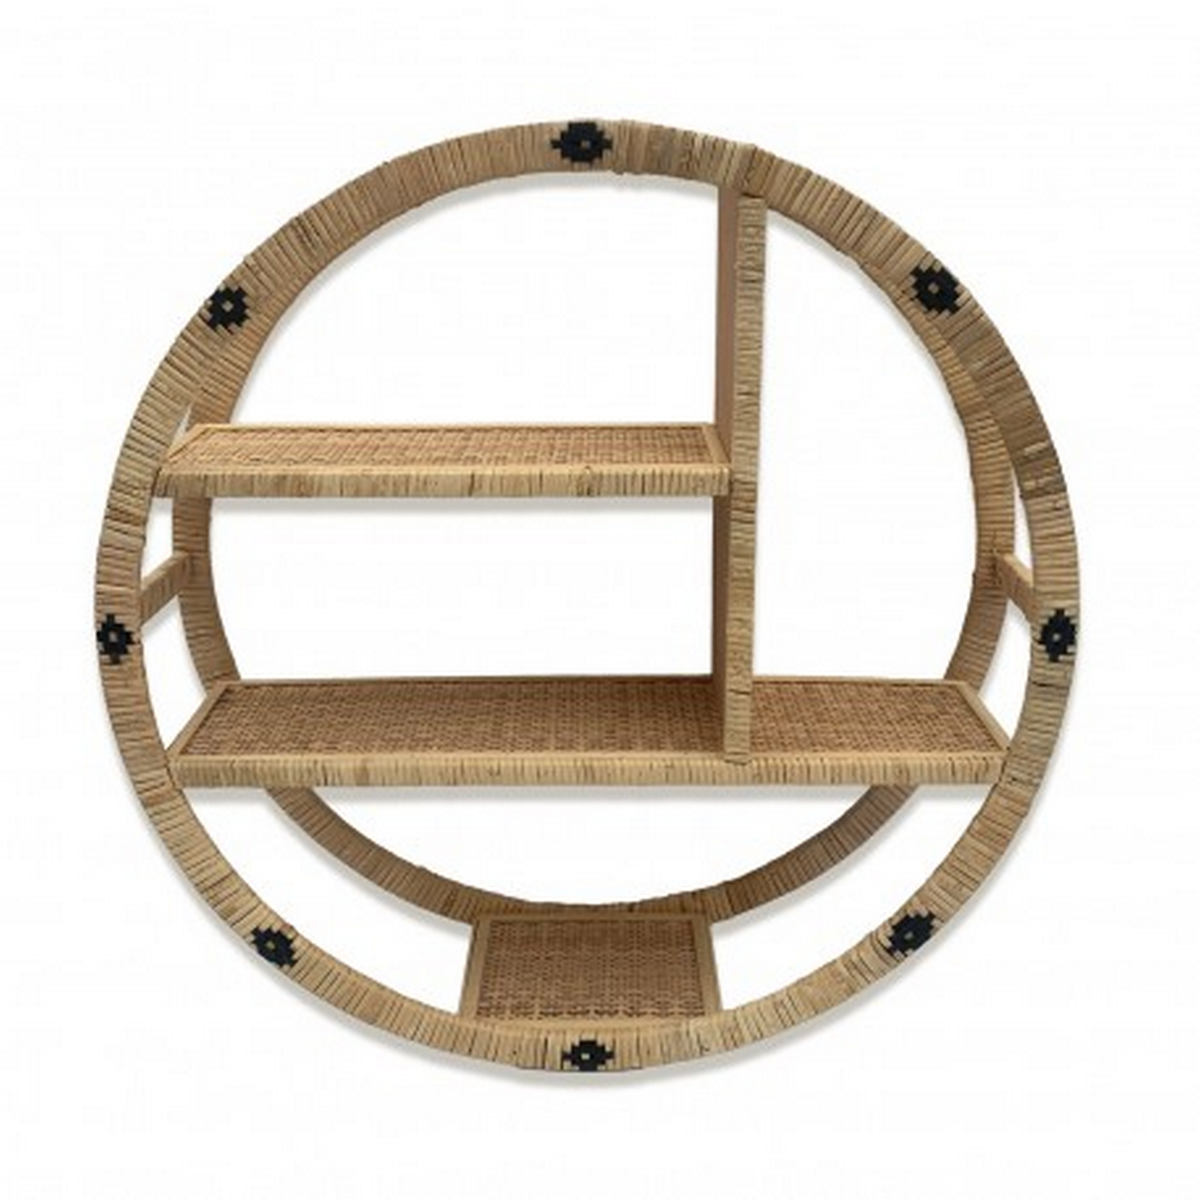 Scaffale Ovale-Rotondo in Rattan - Design Elegante e Funzionale